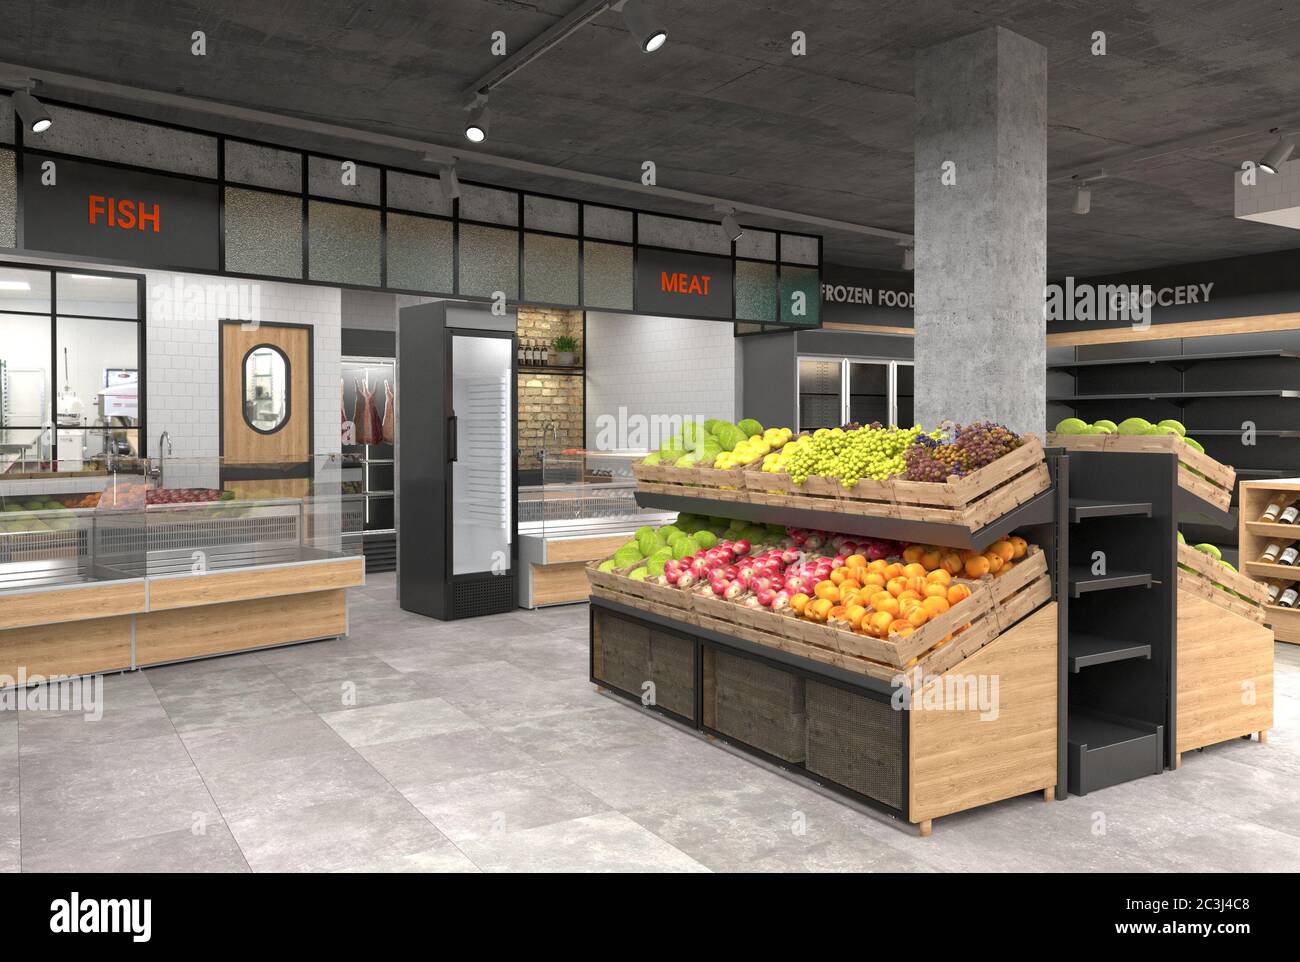 3D-Visualisierung des Innenraums des Lebensmittelladens. Design im Loft-Stil. Stockfoto